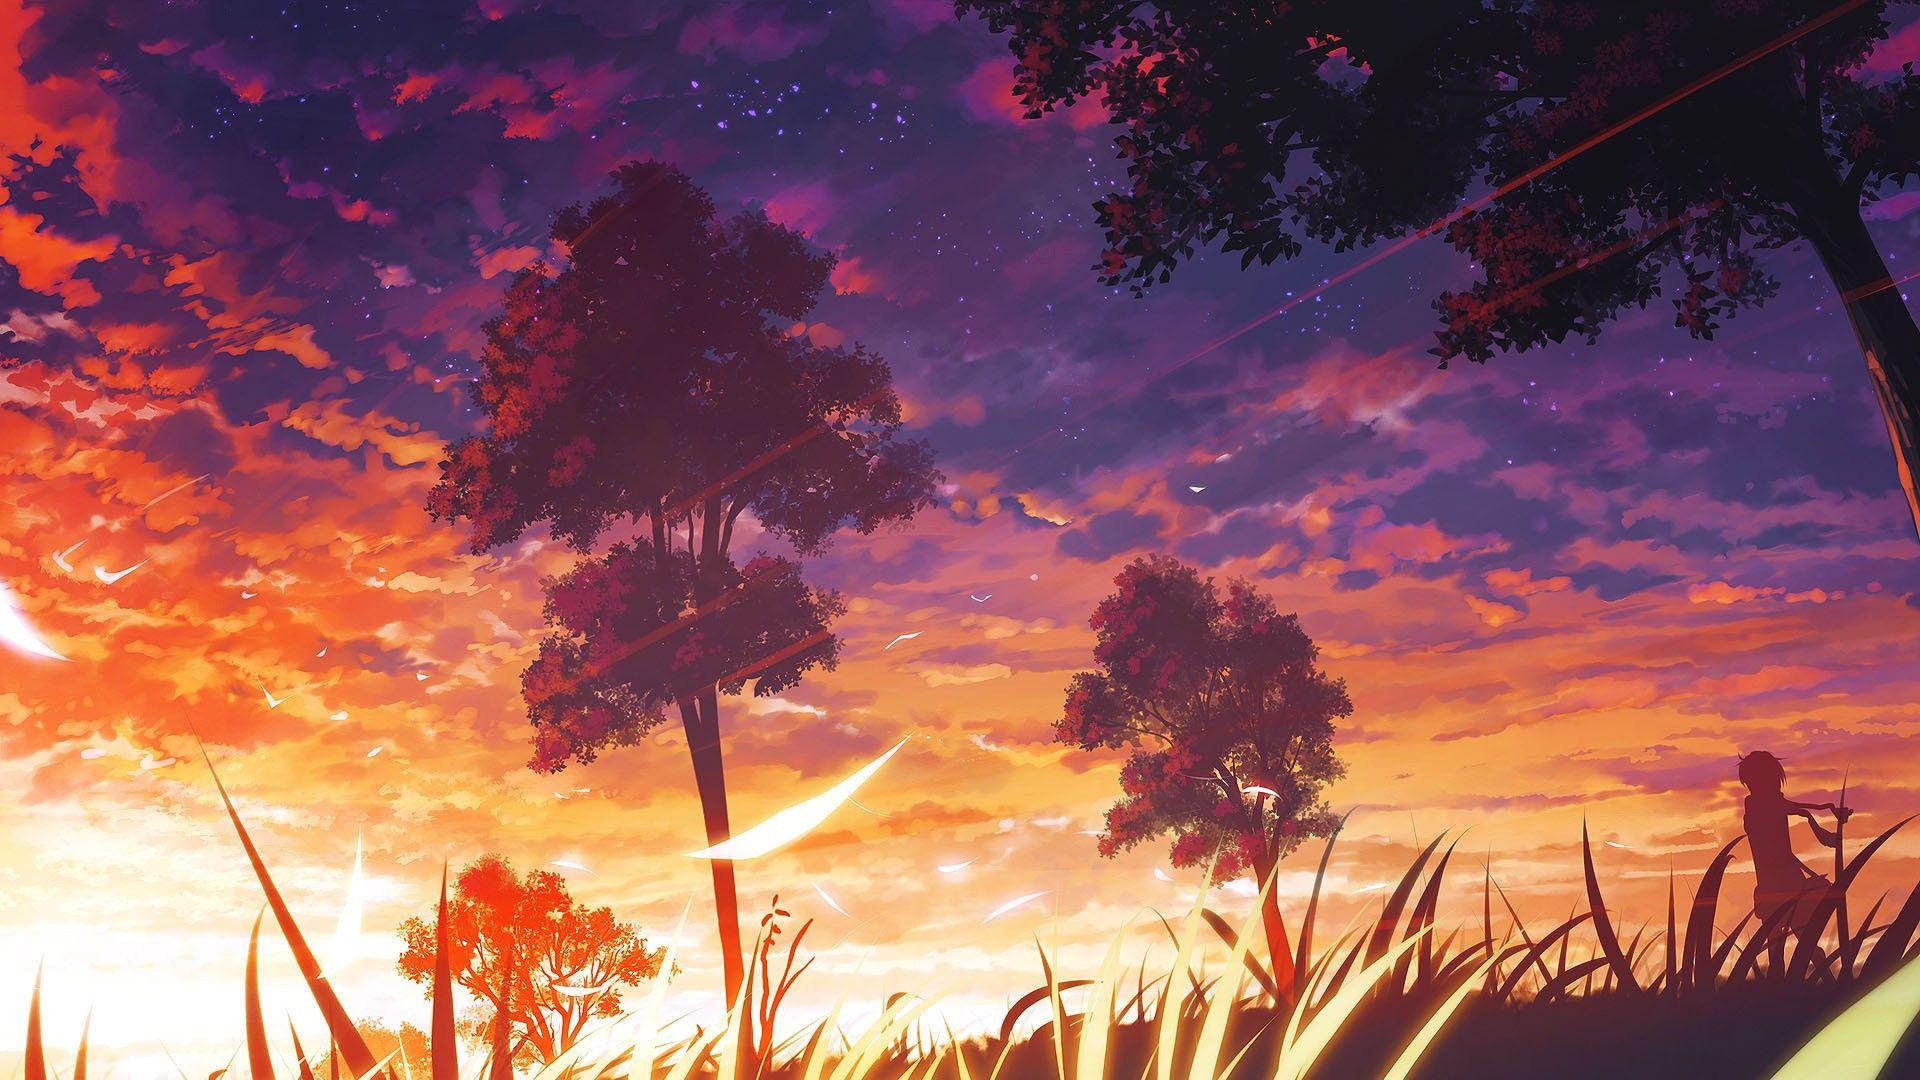 Sunset anime wallpaper [1920x1080]. Scenery wallpaper, Anime